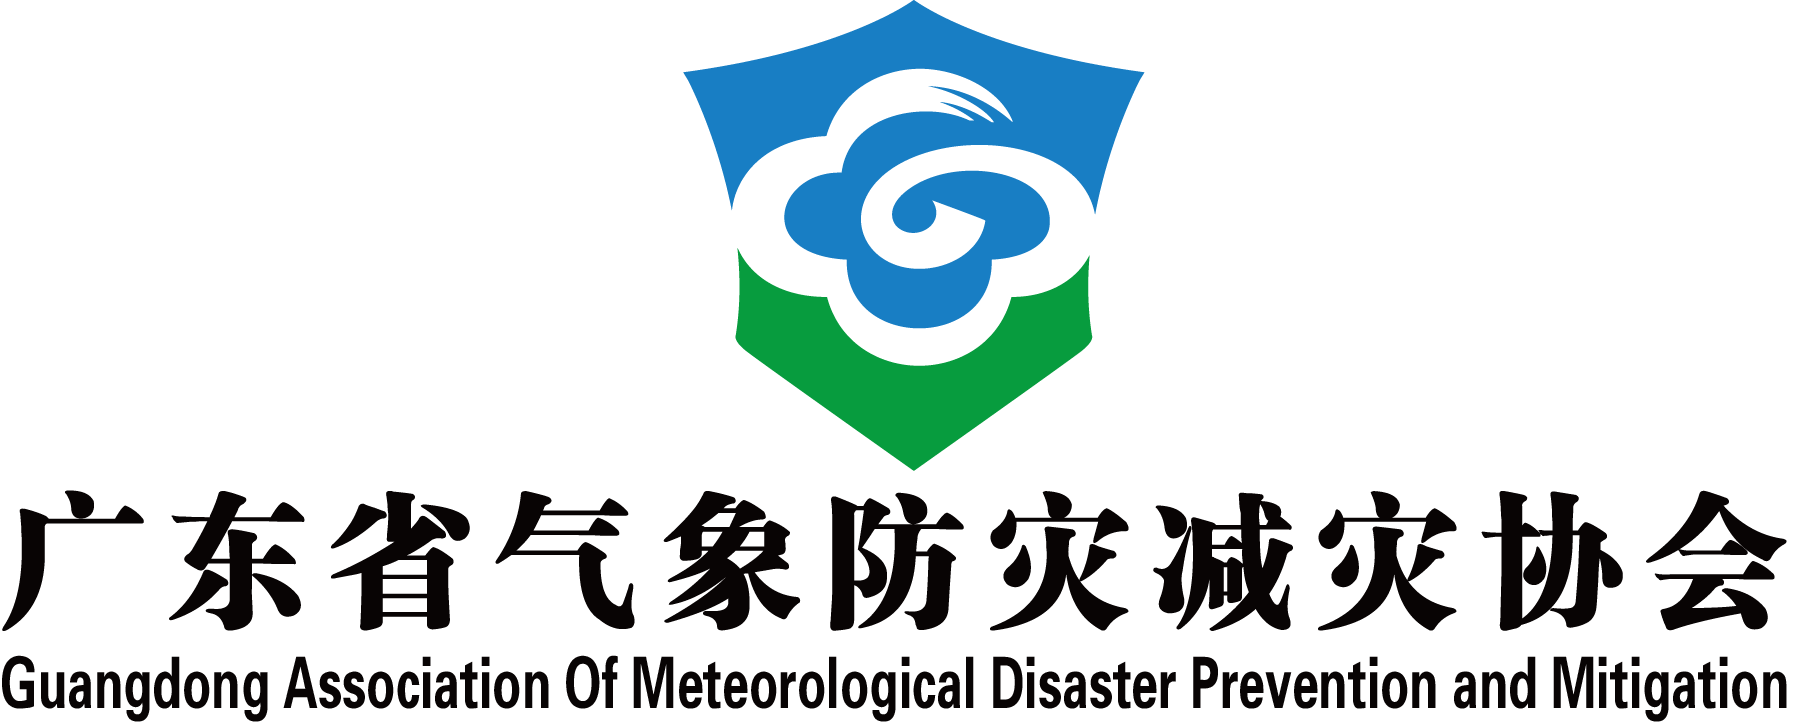 广东省气象防灾减灾协会与讯博网络签订网站建设项目